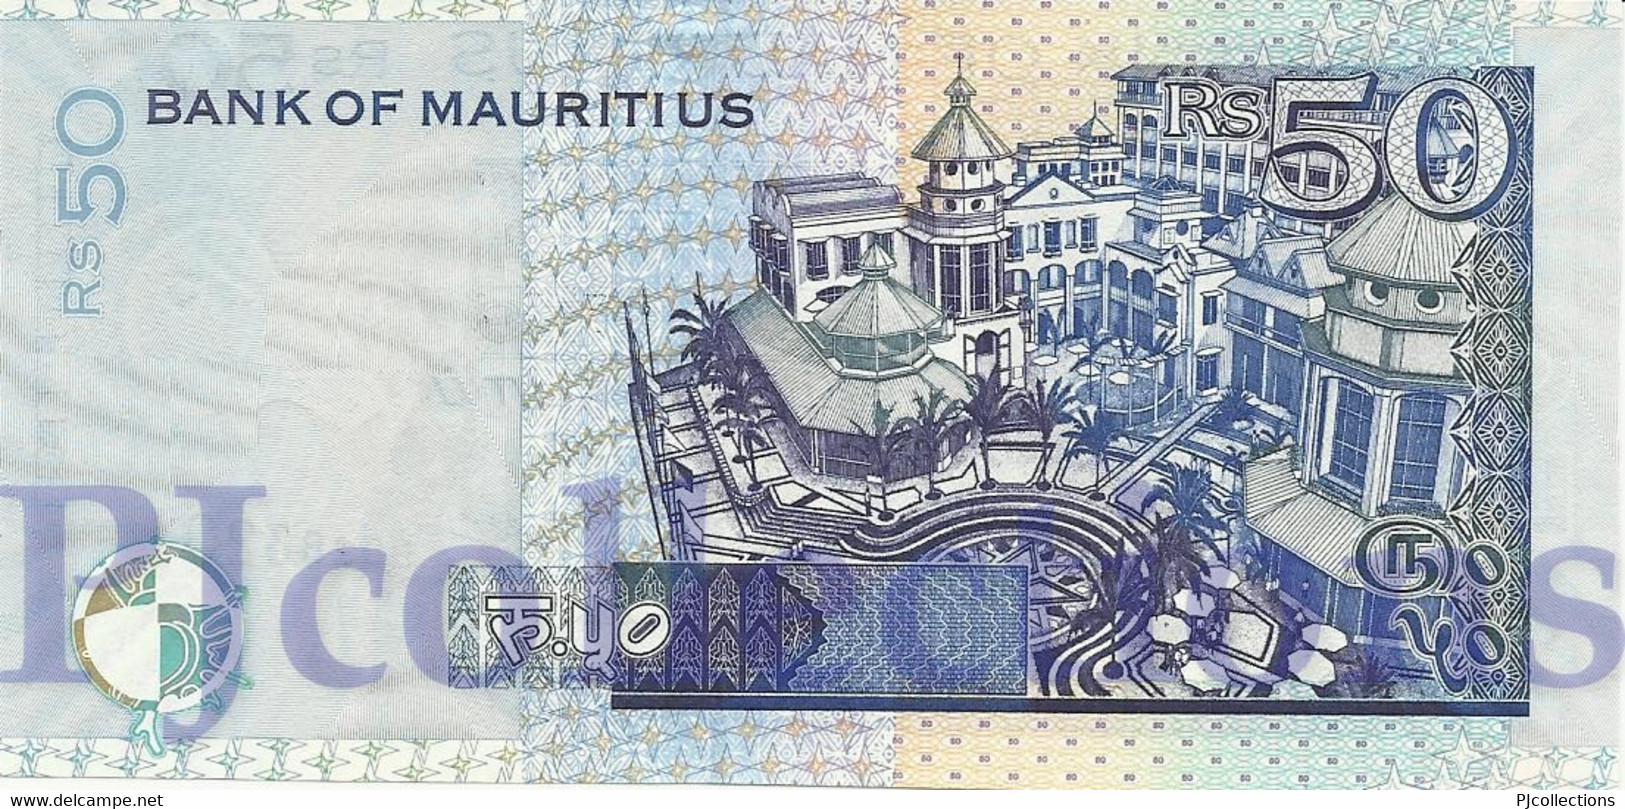 MAURITIUS 50 RUPEES 2009 PICK 50e UNC - Mauritius